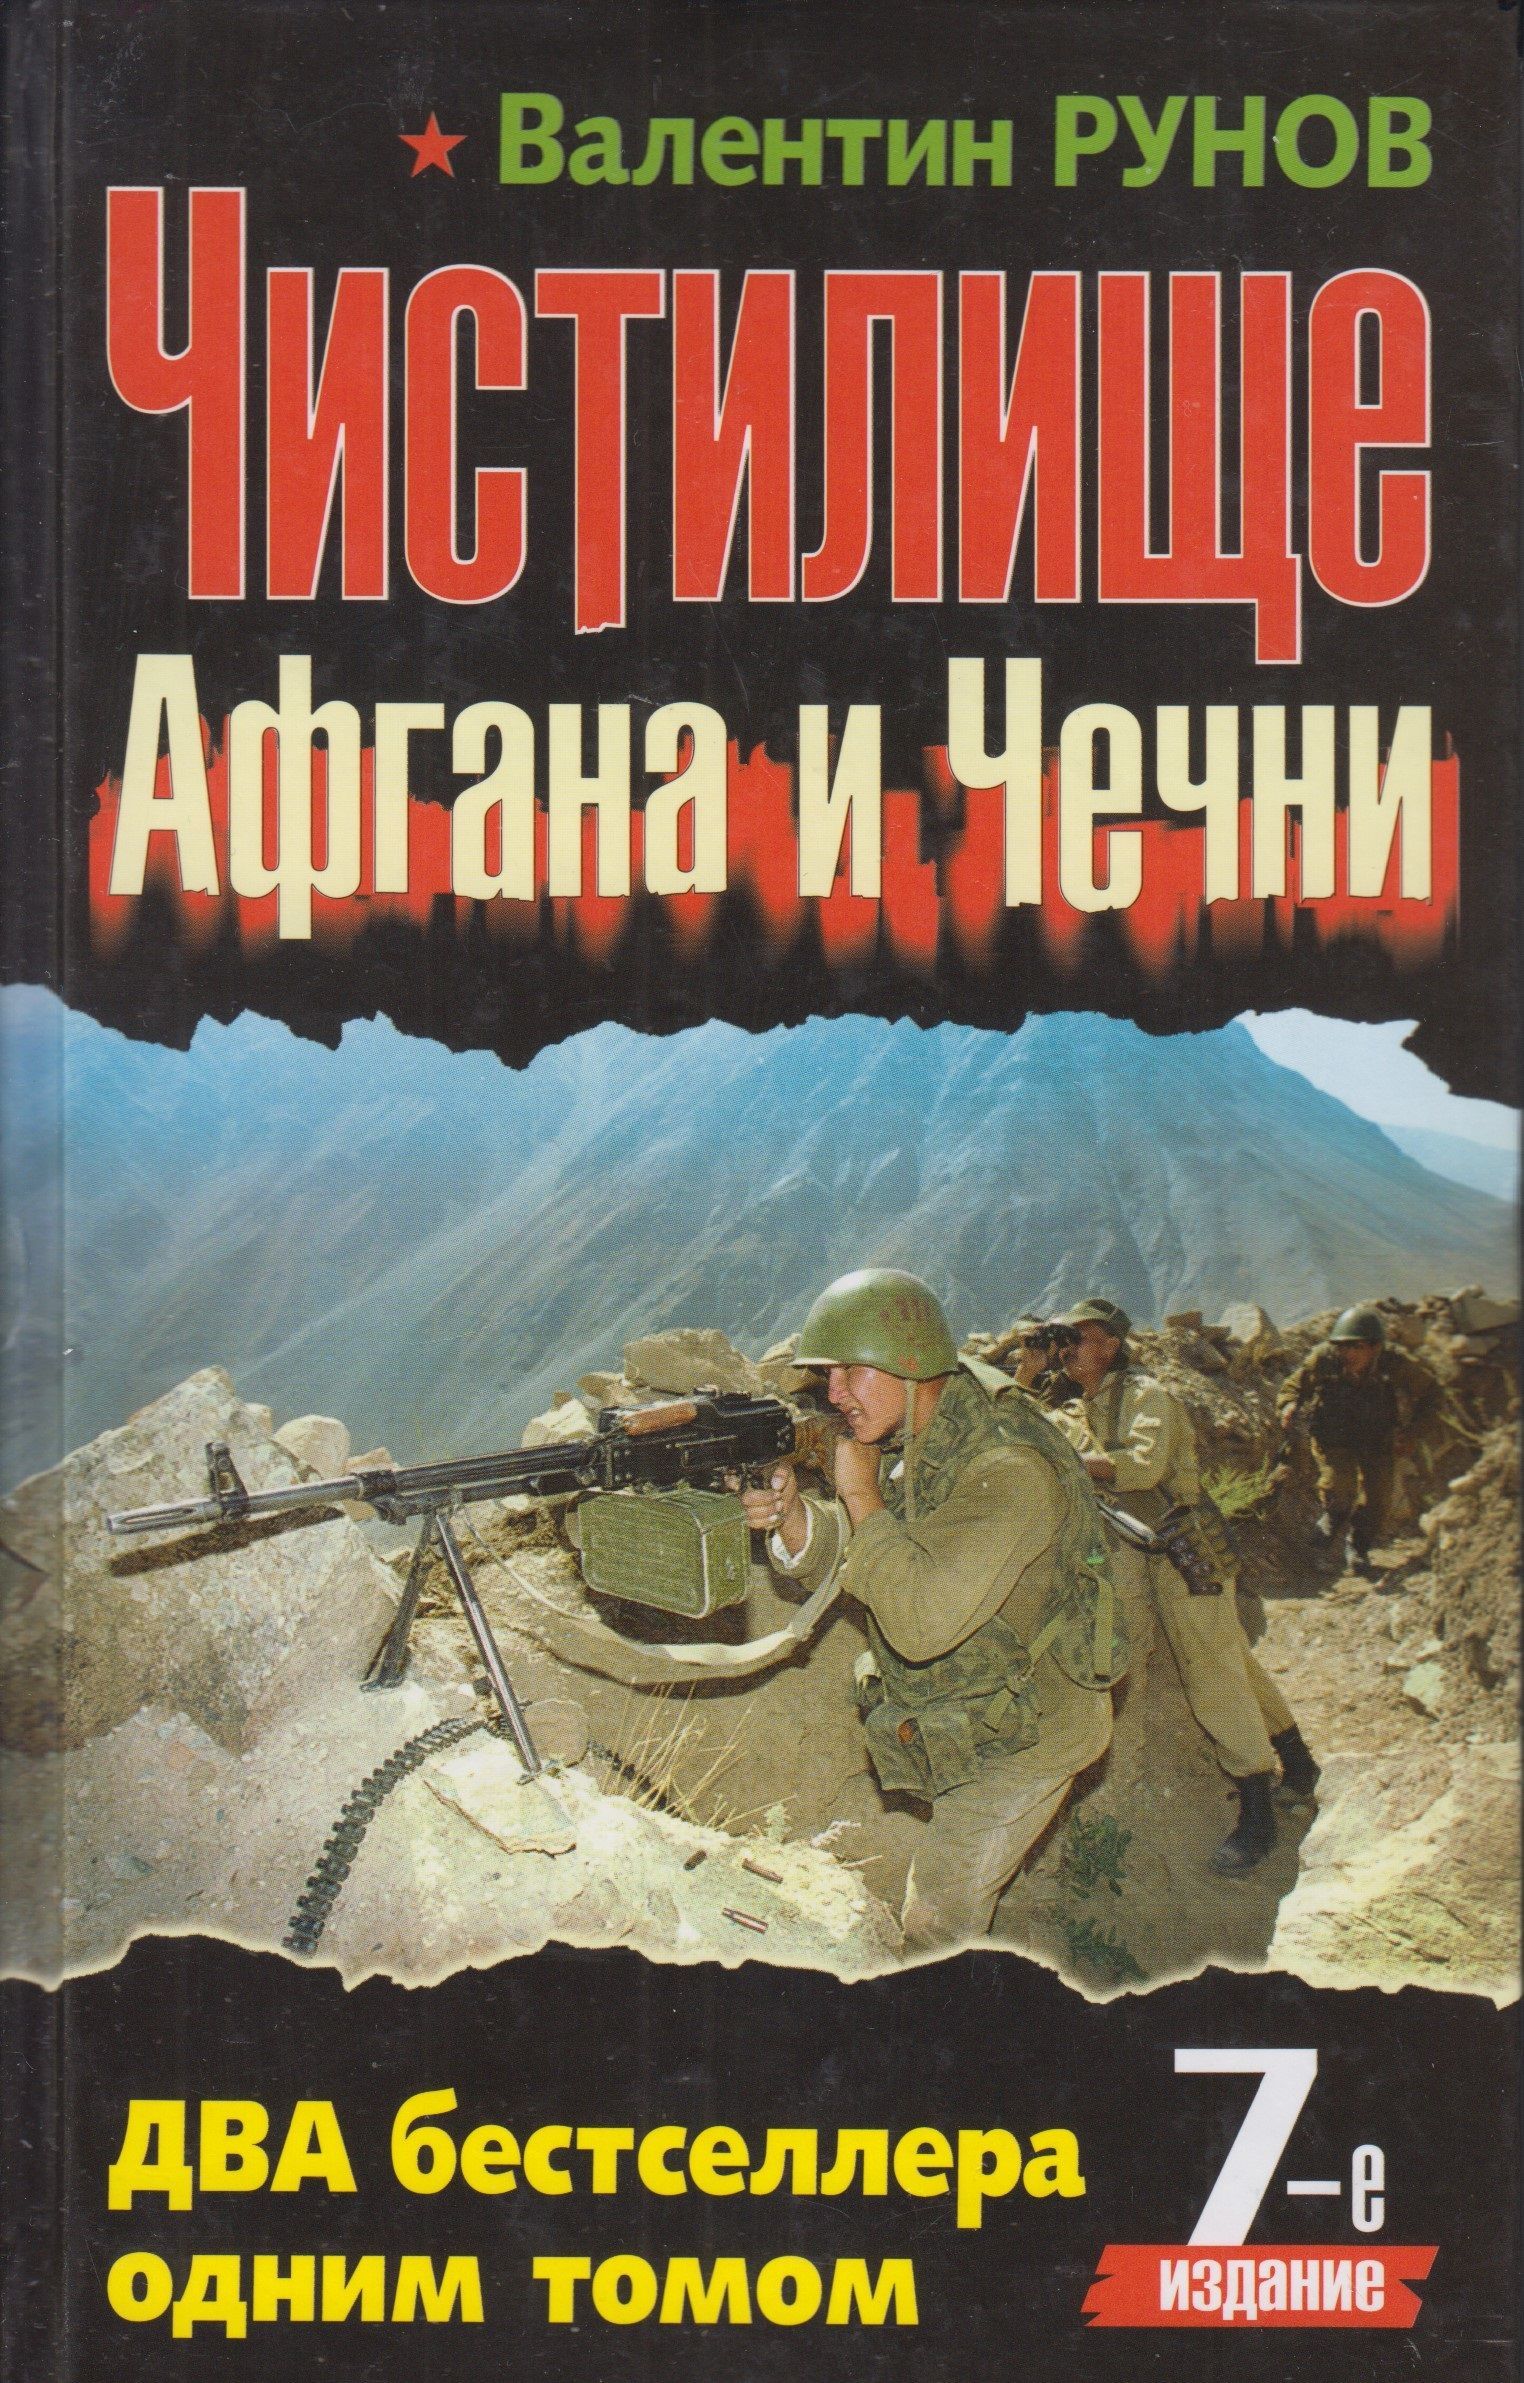 Читать книгу про чечню. Чистилище Афгана и Чечни книга. Книги о войне в Чечне.